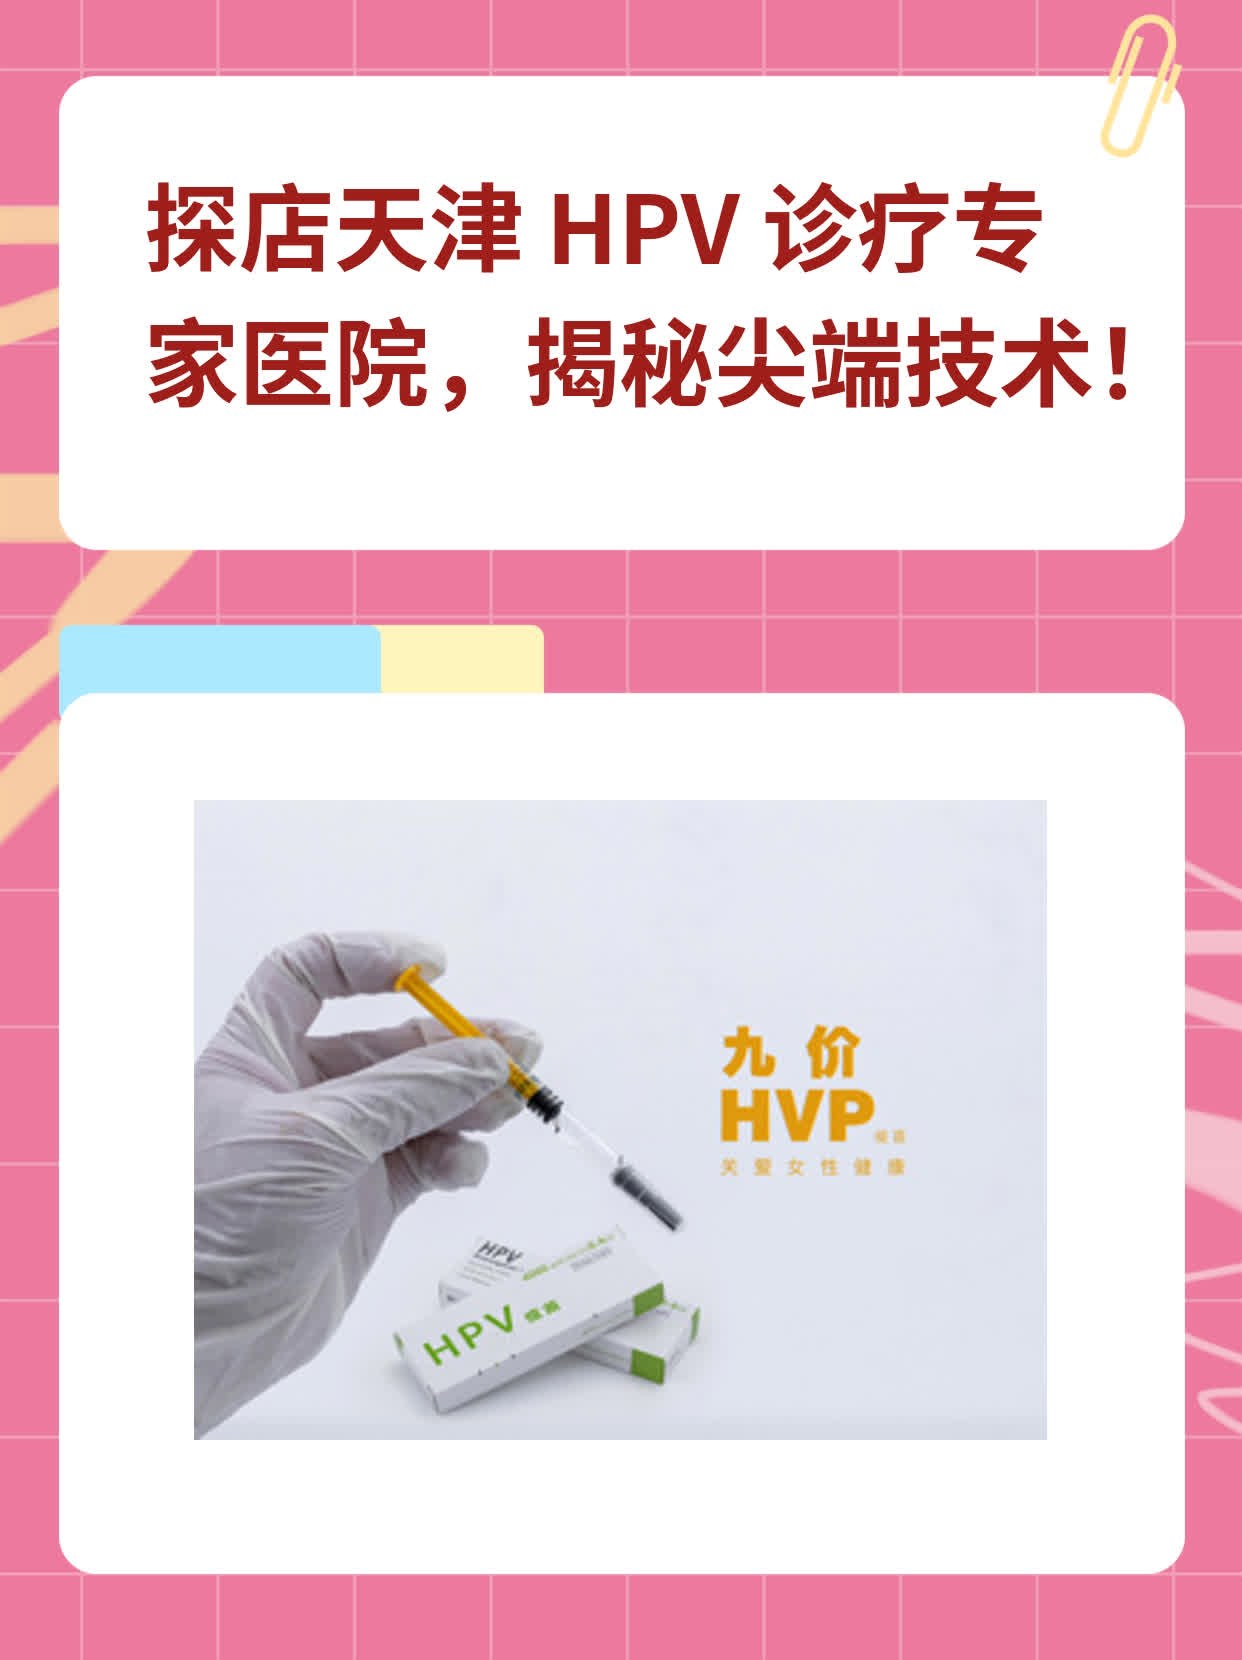 探店天津 HPV 诊疗专家医院，揭秘尖端技术！